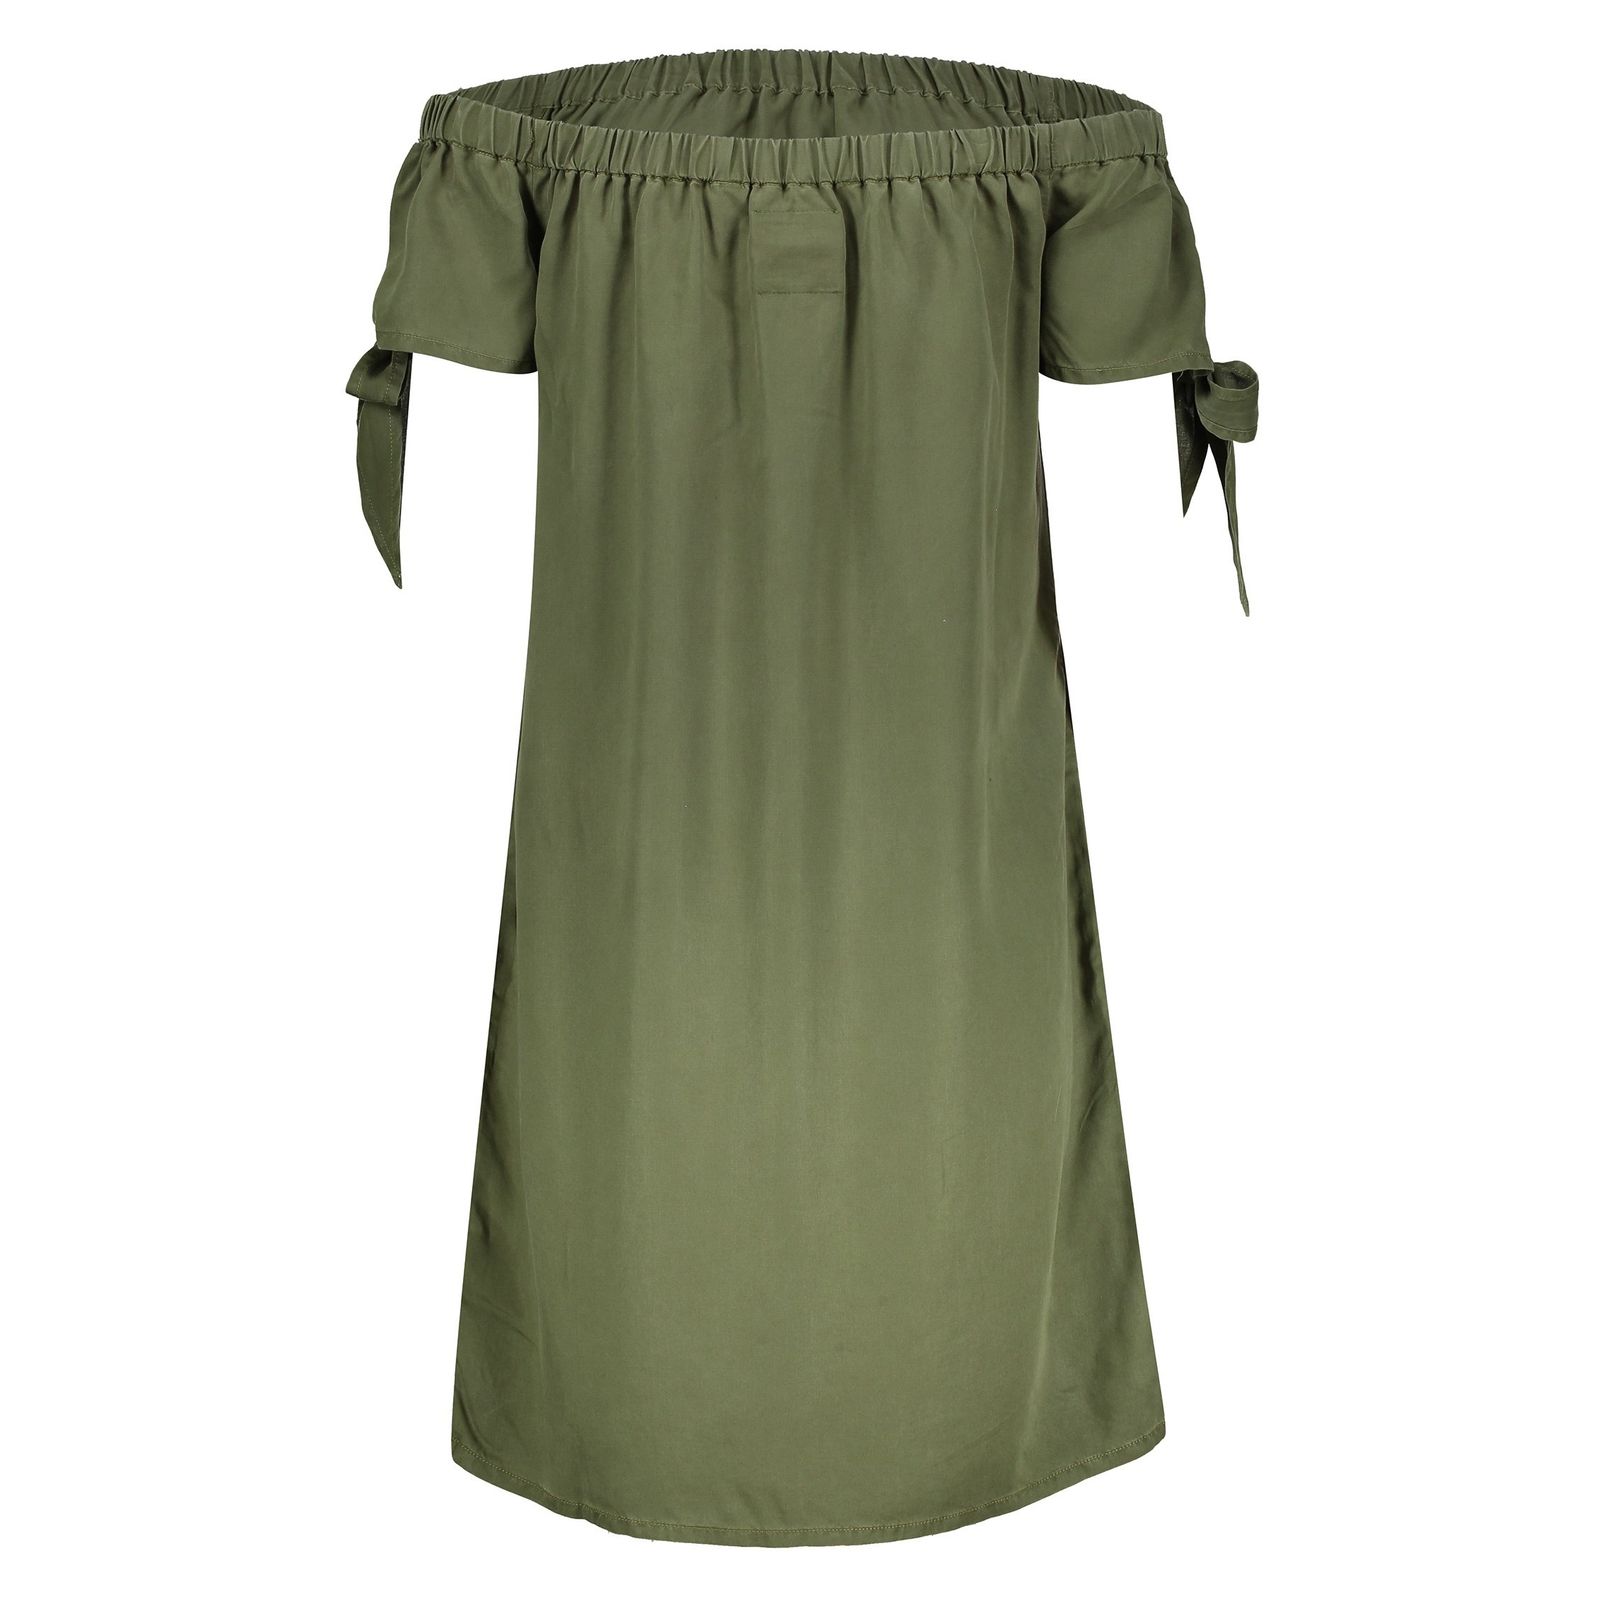 پیراهن کوتاه زنانه - سوپردرای - سبز  - 1